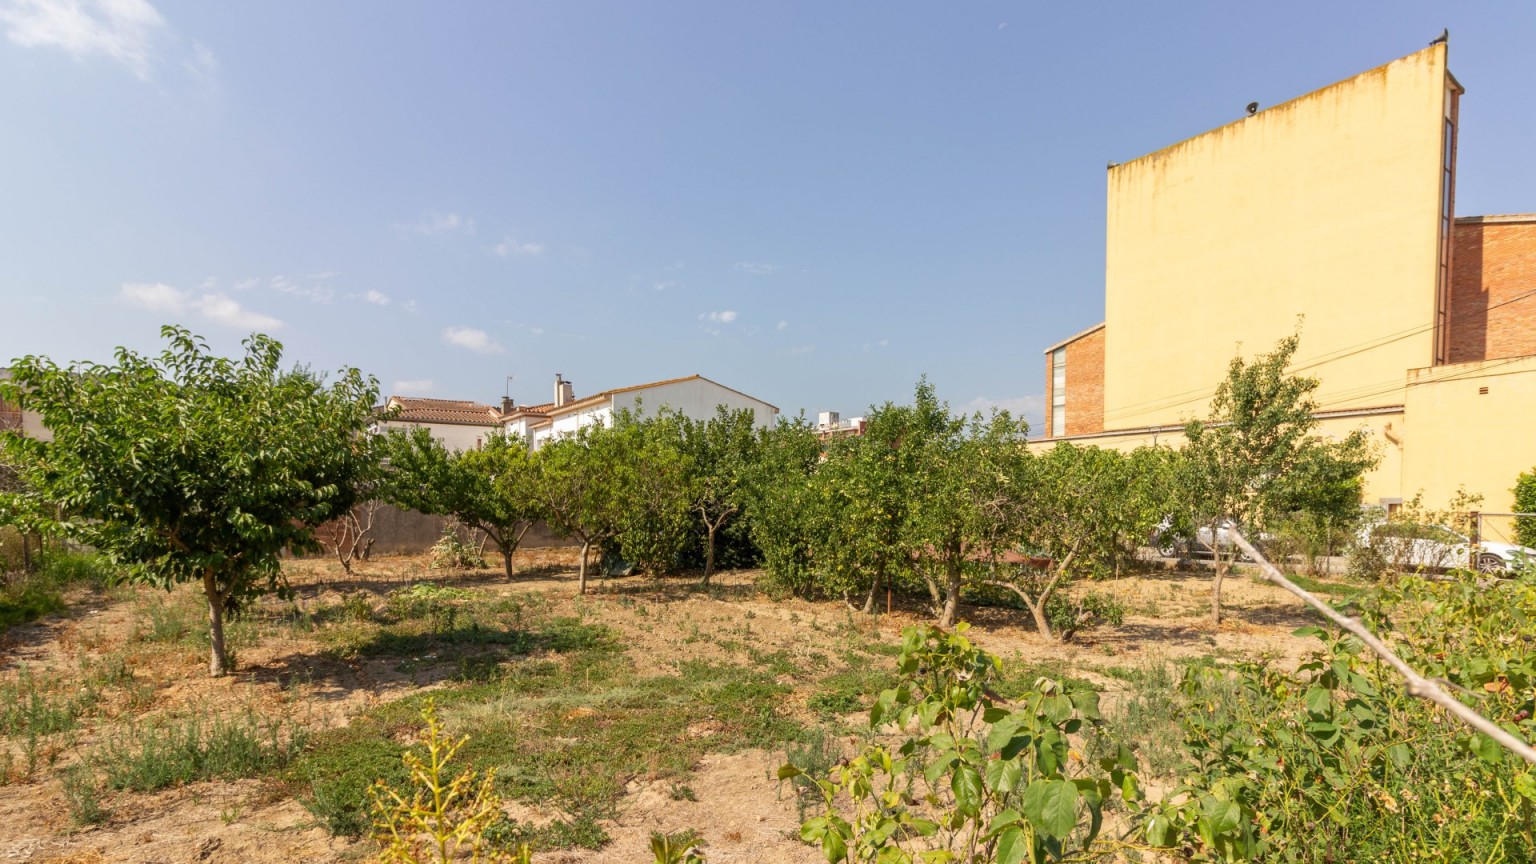 Terrain à bâtir à vendre, situé à Bescanó.